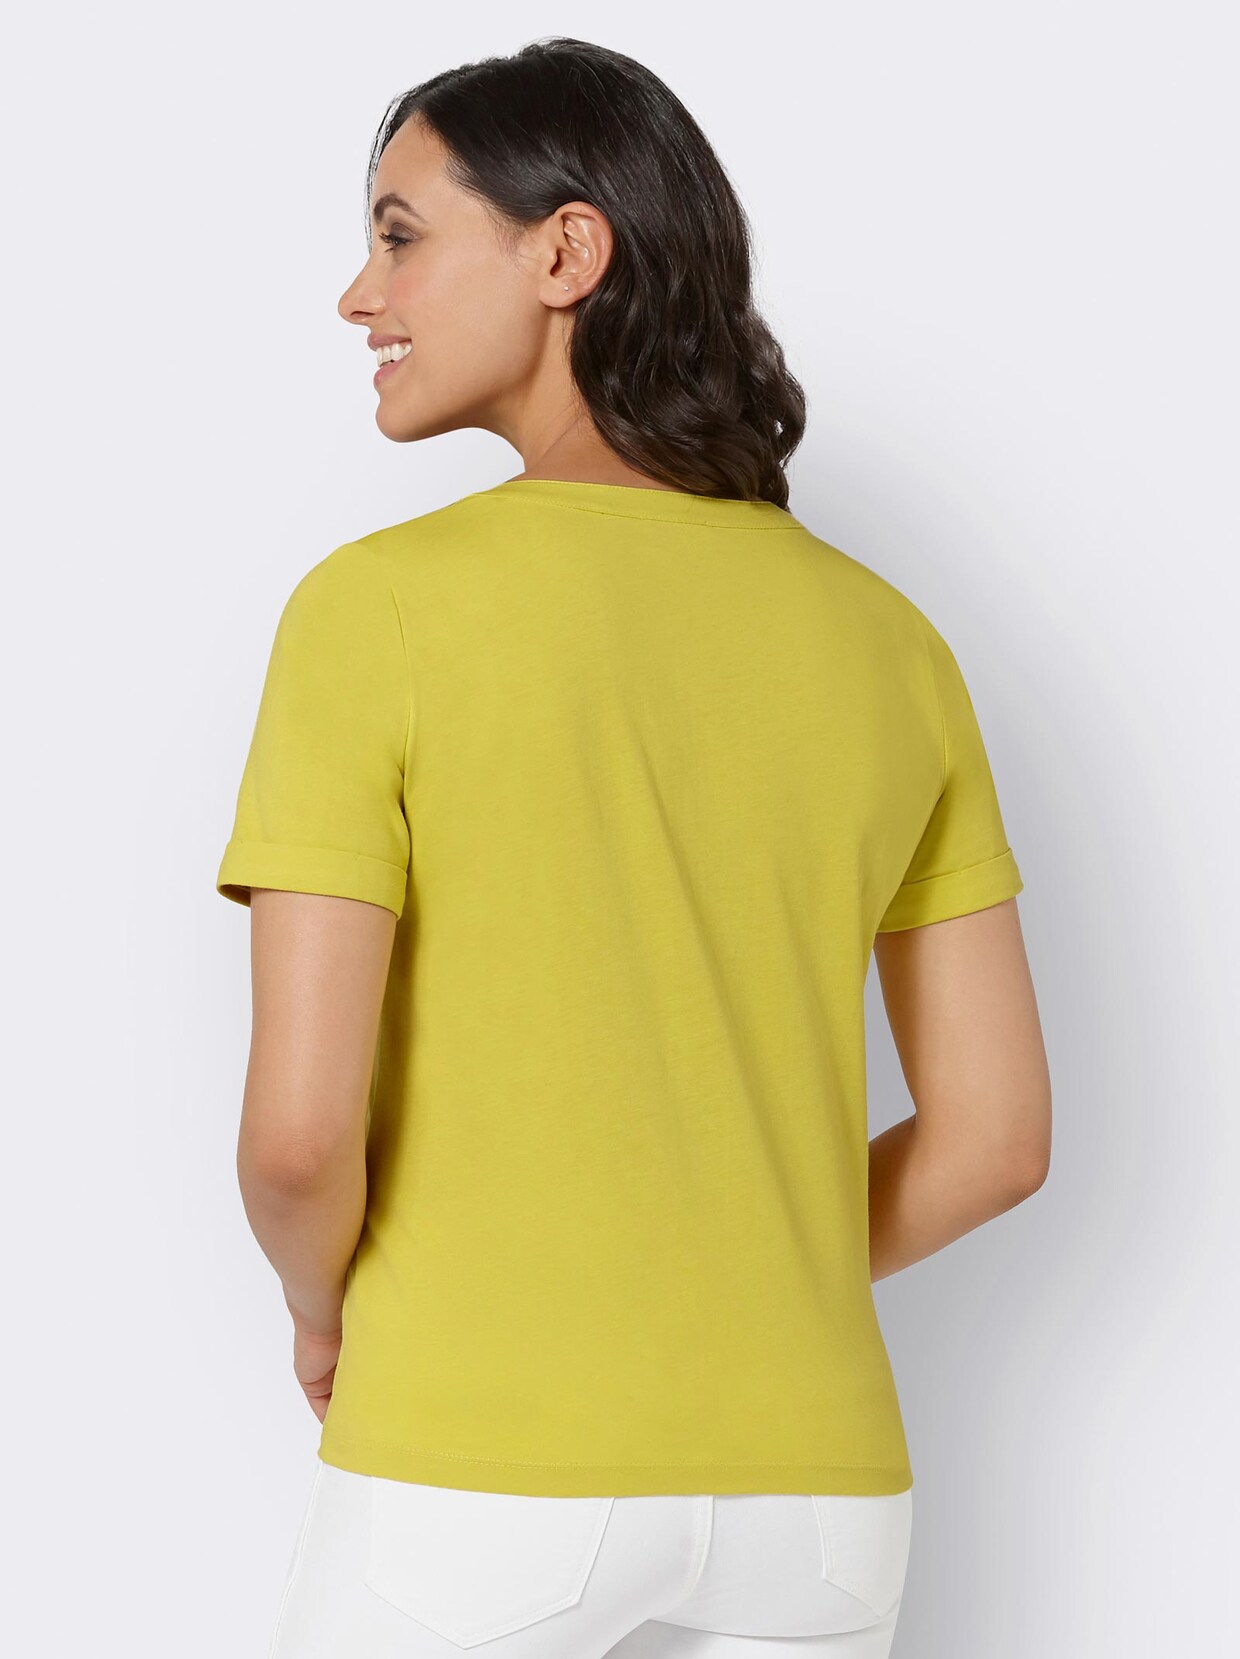 Print-Shirt - limone-bedruckt